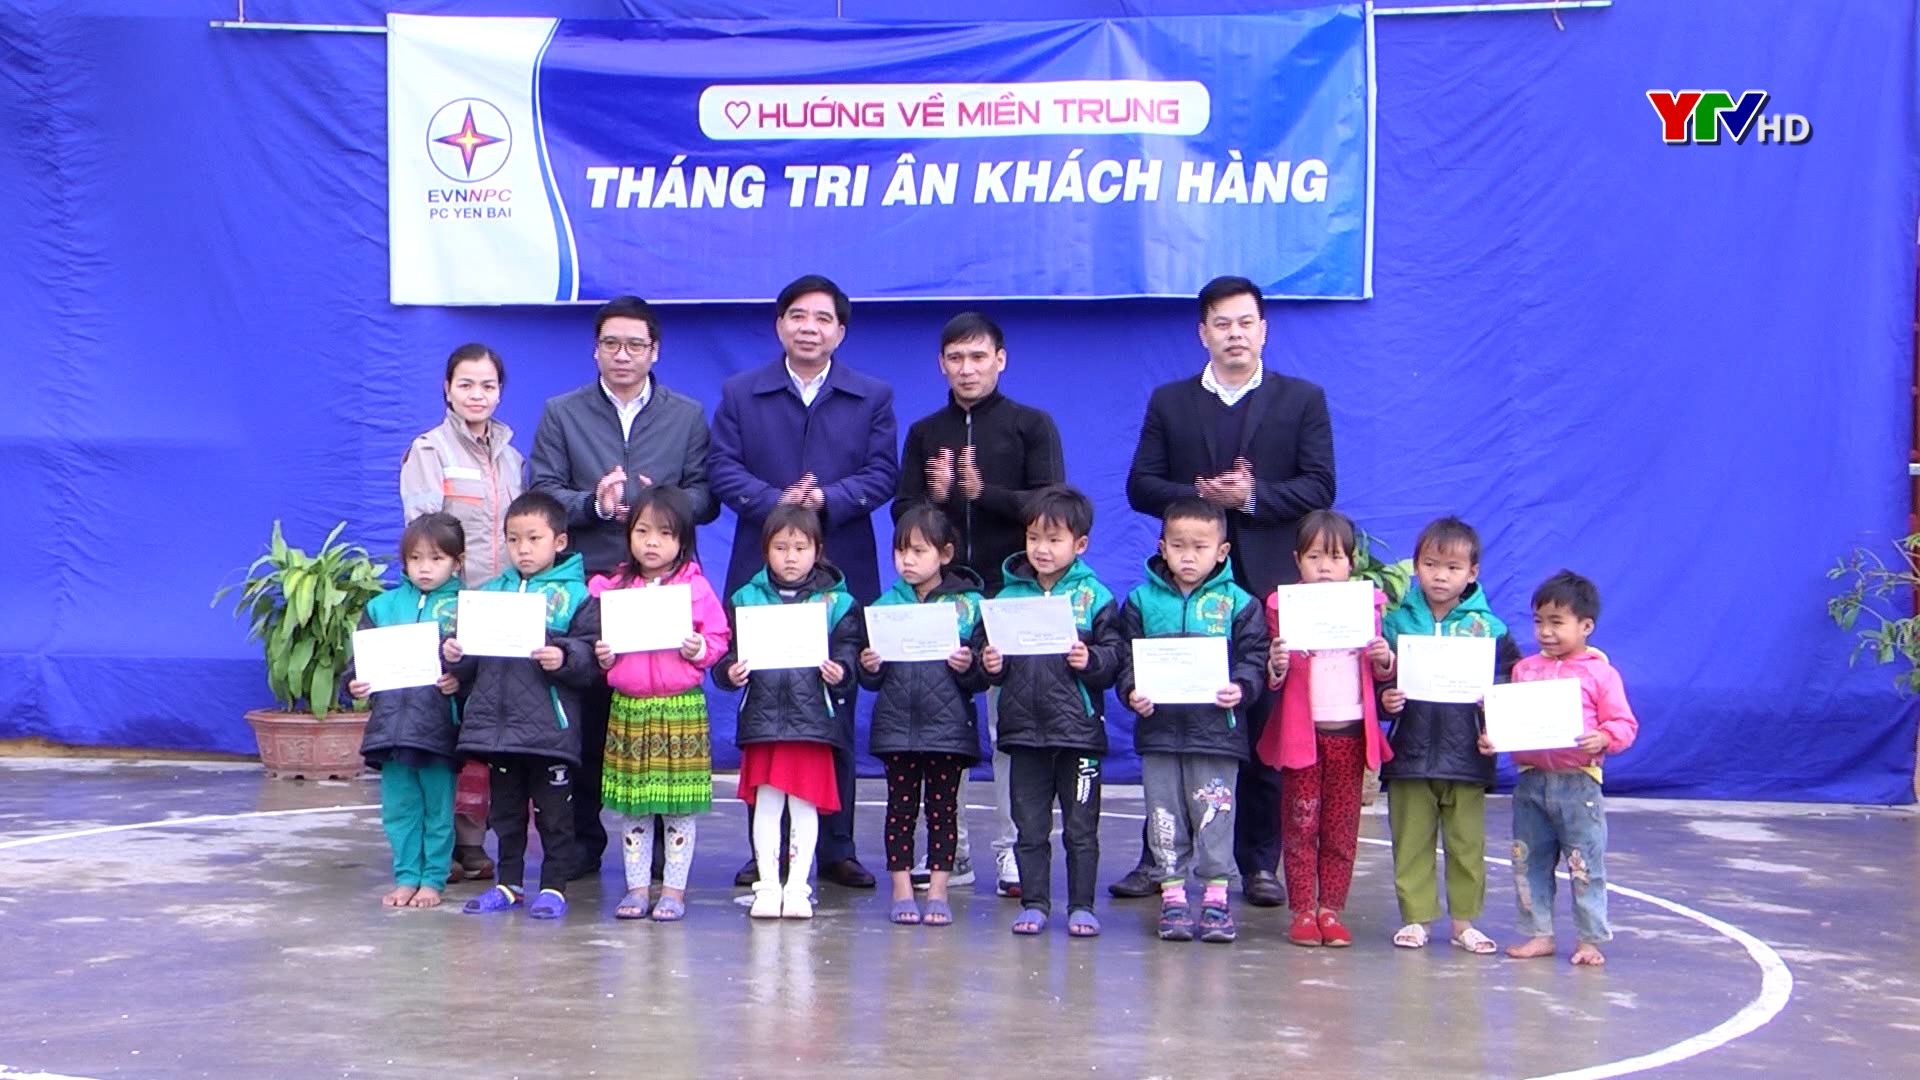 Công ty Điện lực Yên Bái tổ chức chương trình “Tri ân khách hàng” tại huyện Văn Yên